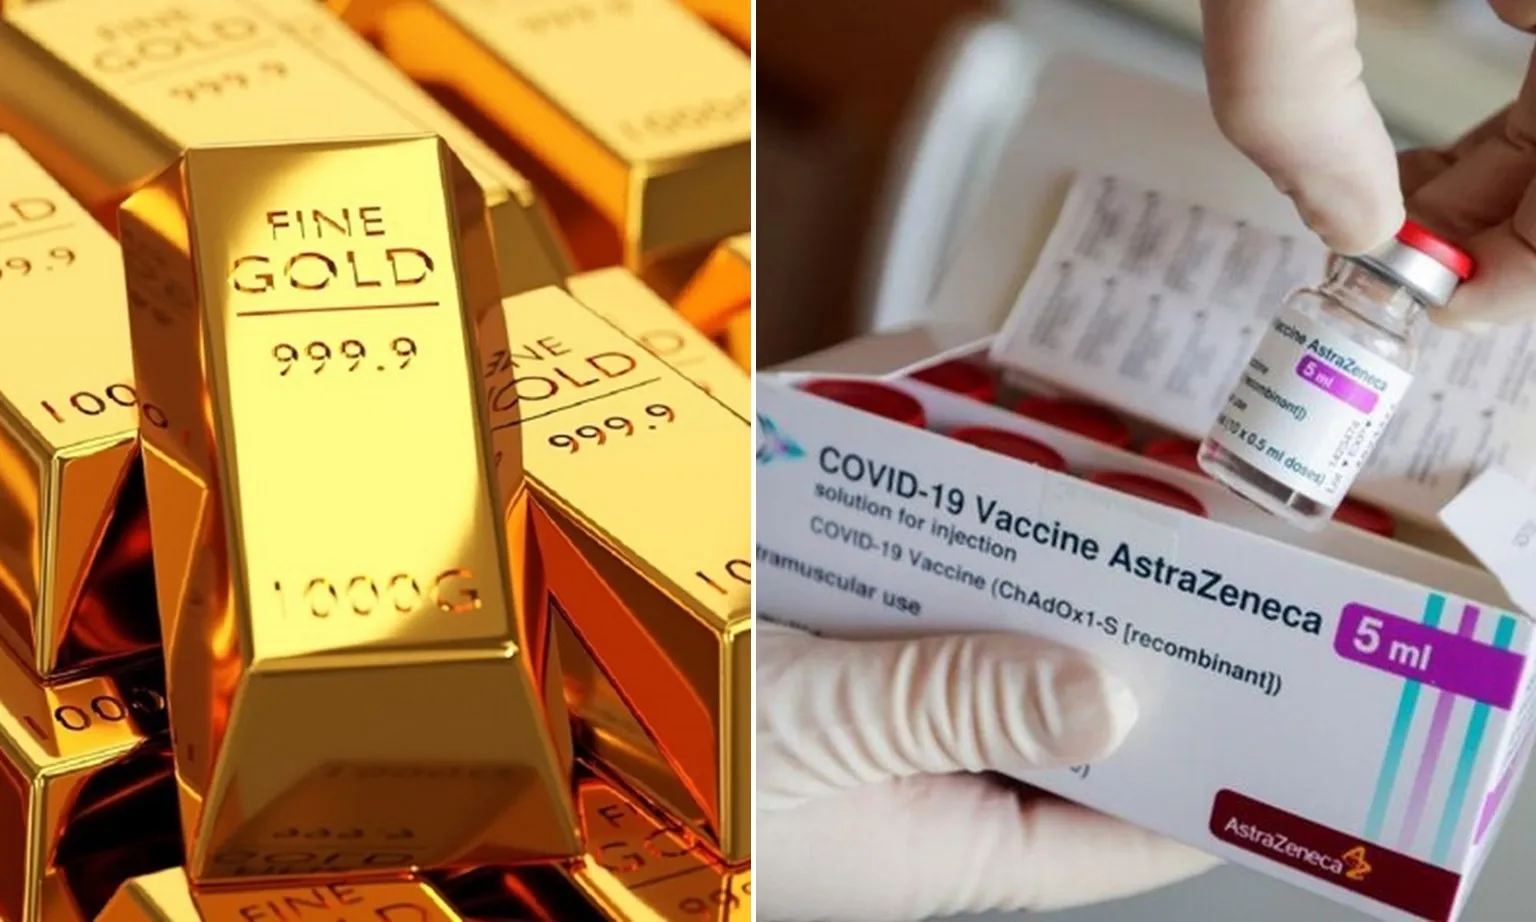 Điểm tin chiều 8/5: Đấu giá thành công 3.400 lượng vàng | Việt Nam hết vaccine Covid-19 AstraZeneca